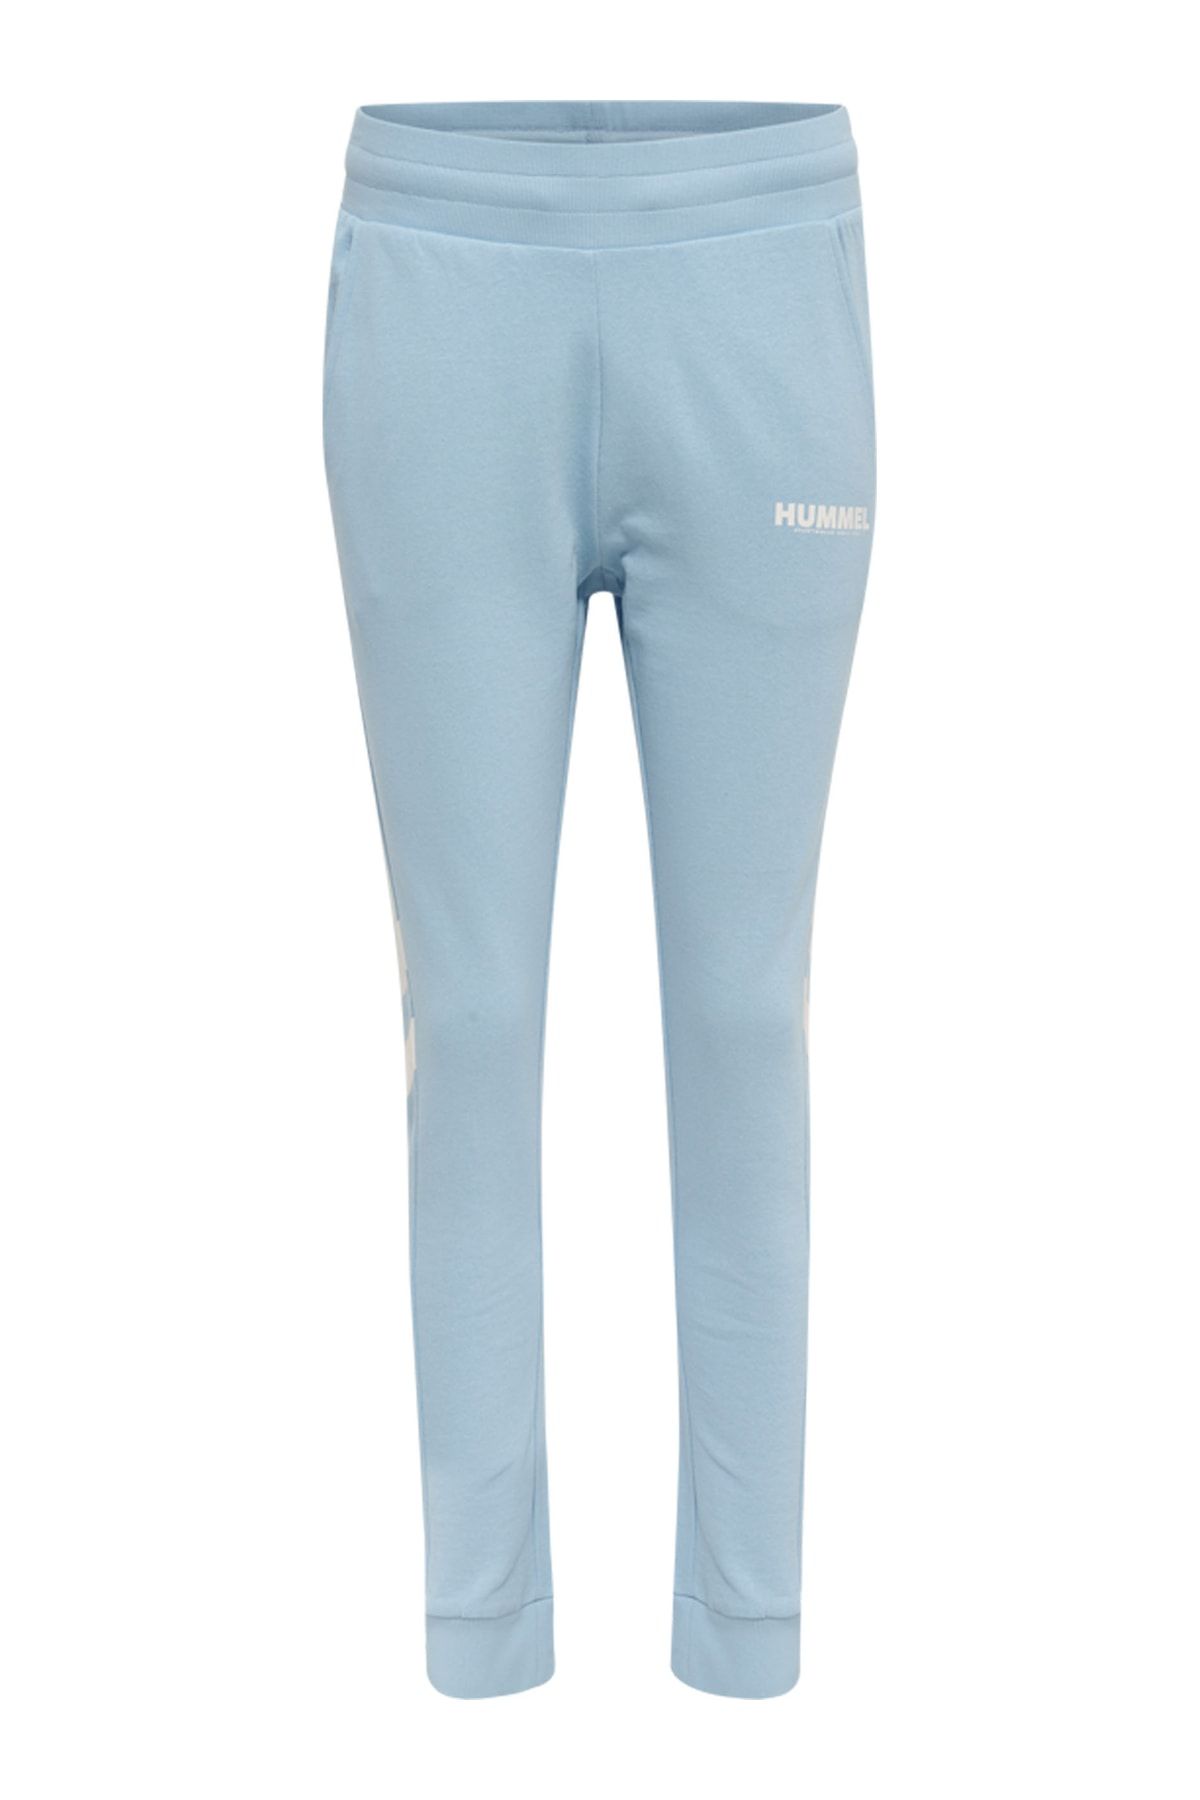 Blau HUMMEL Hosen für Damen Online Kaufen - Trendyol | Leggings